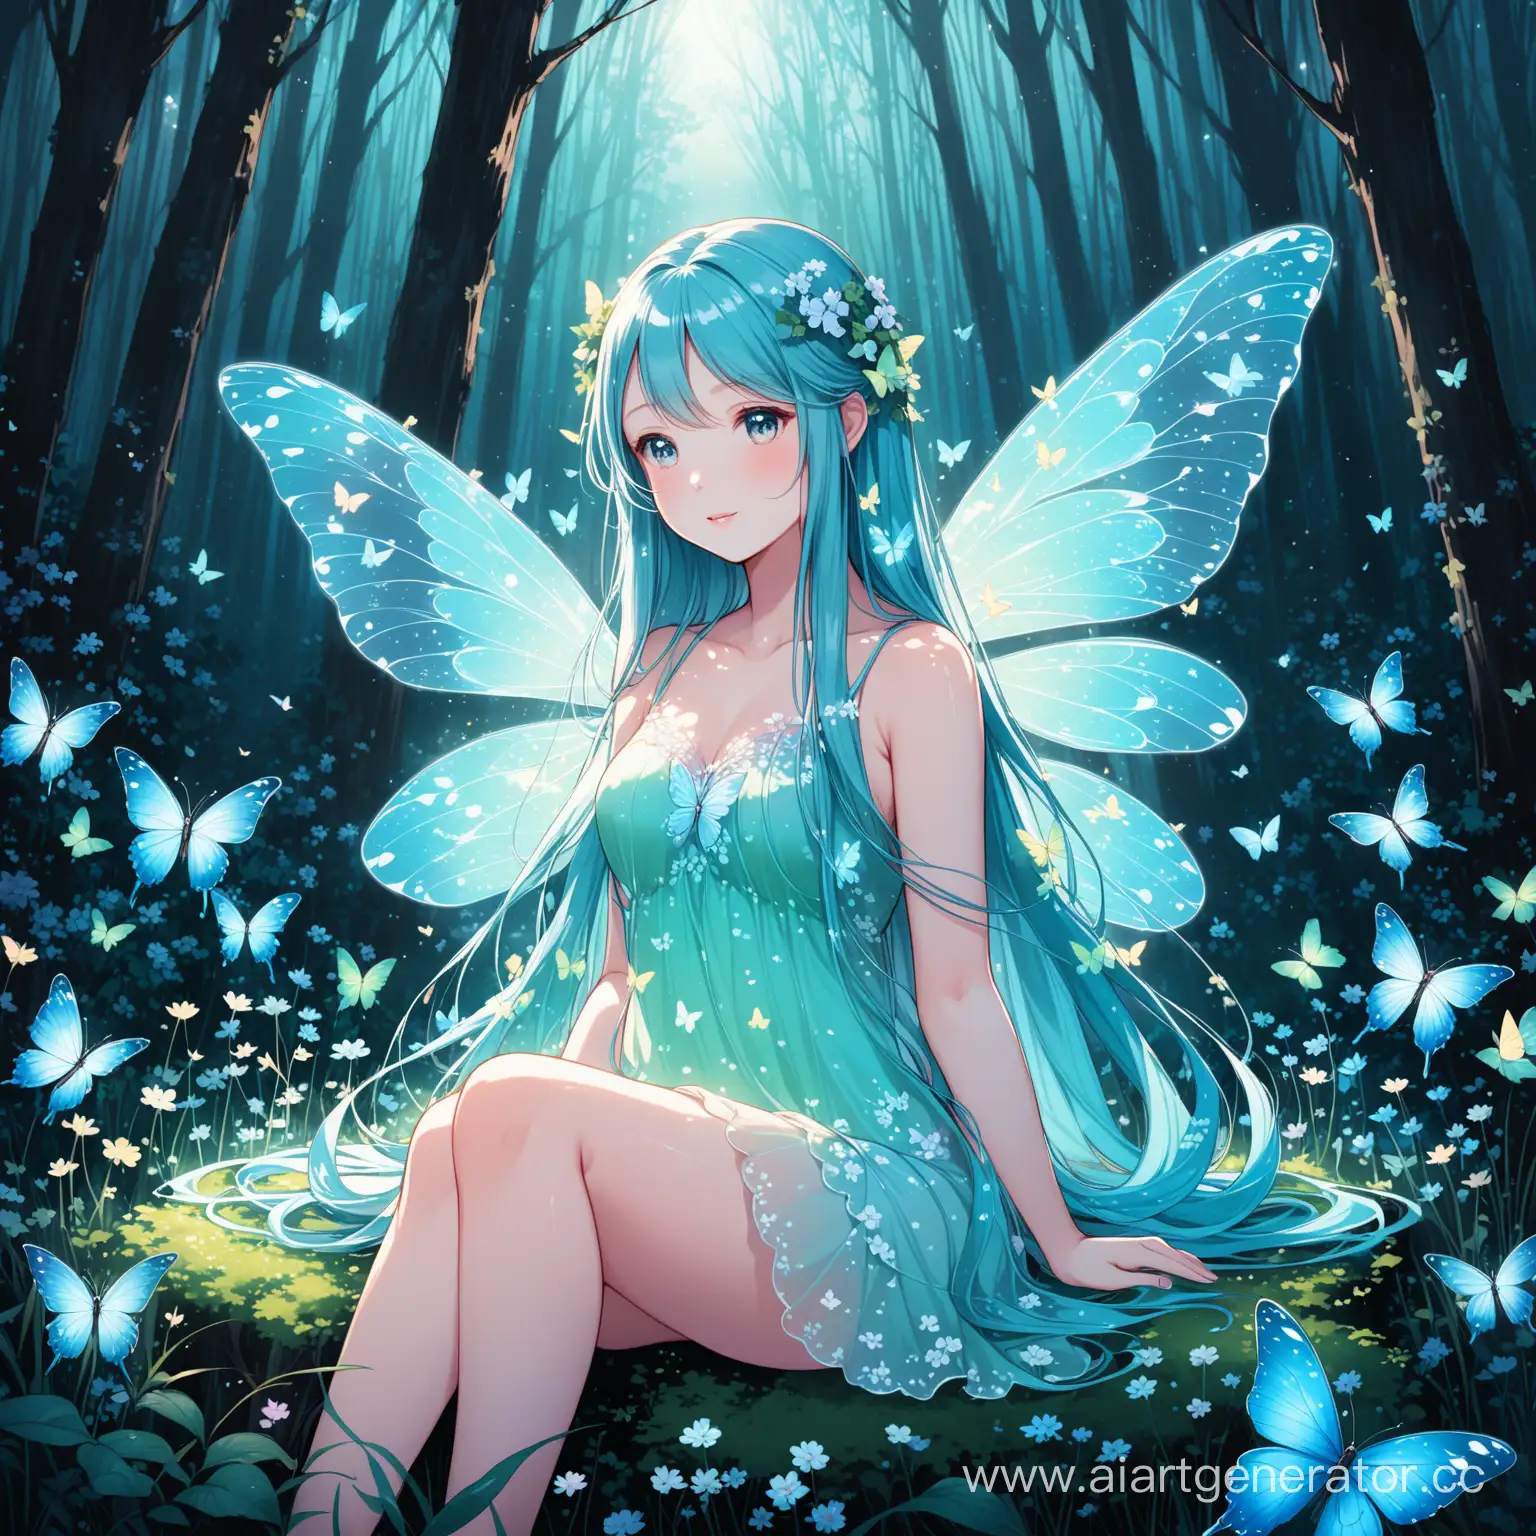 Ormanda, loş bir ışık,  bir peri kız oturuyor, etrafta rengarenk birkaç kelebek var. Kızın saçları uuzn ve güzel bir vücudu var. İlkbahar zamanı, etrafta çiçekler dolu. Kızın kanatları şeffaf hafif mavimsi bir renk.